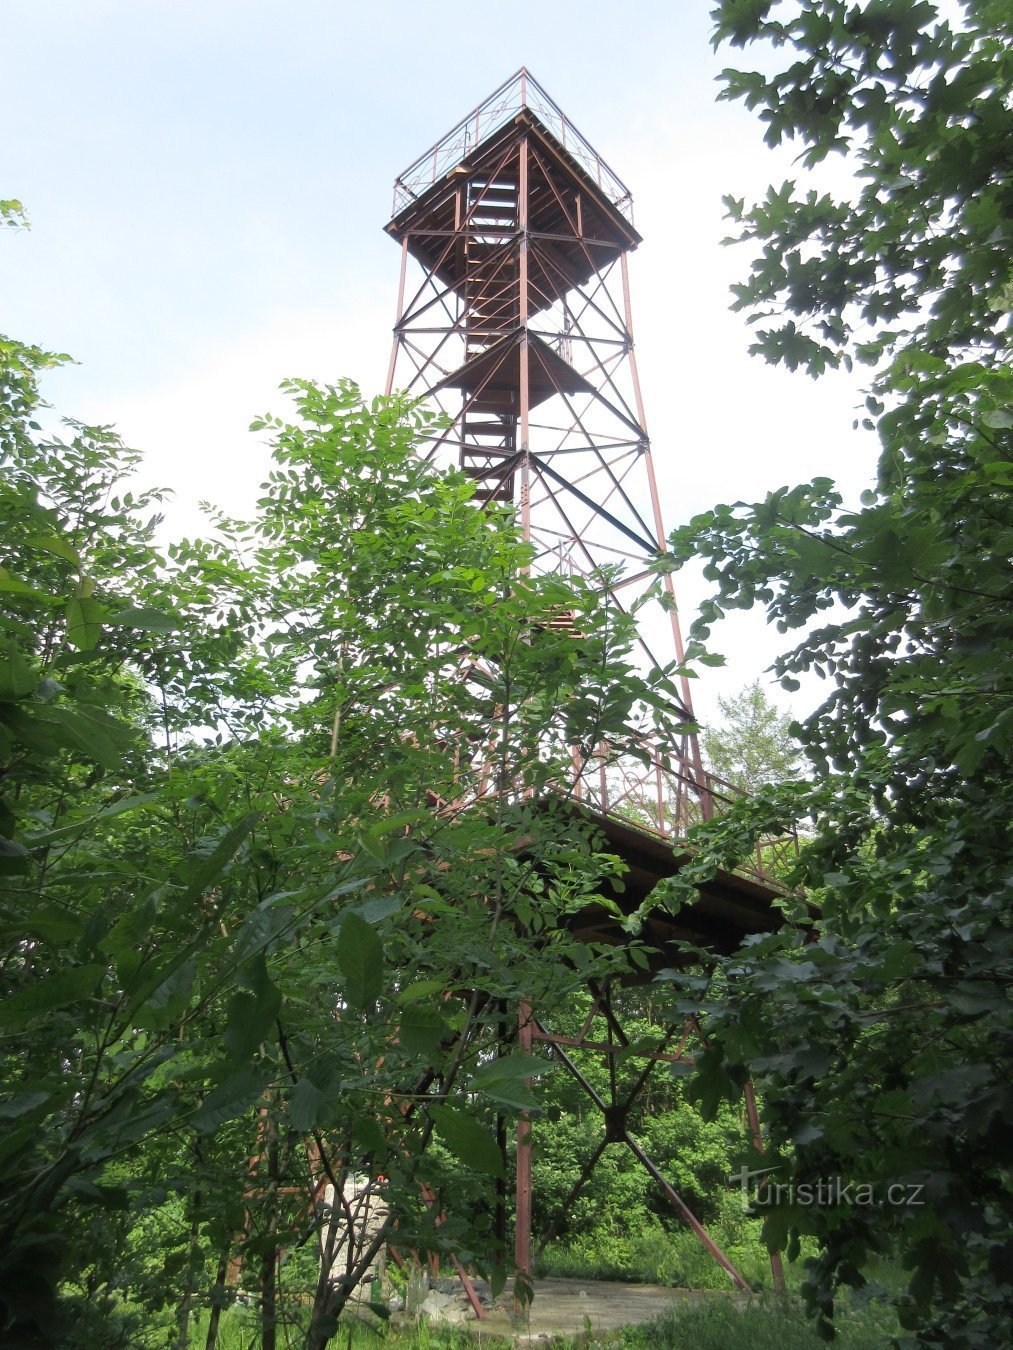 Libníkovice - istoria satului și turnul de observație Libníkovice